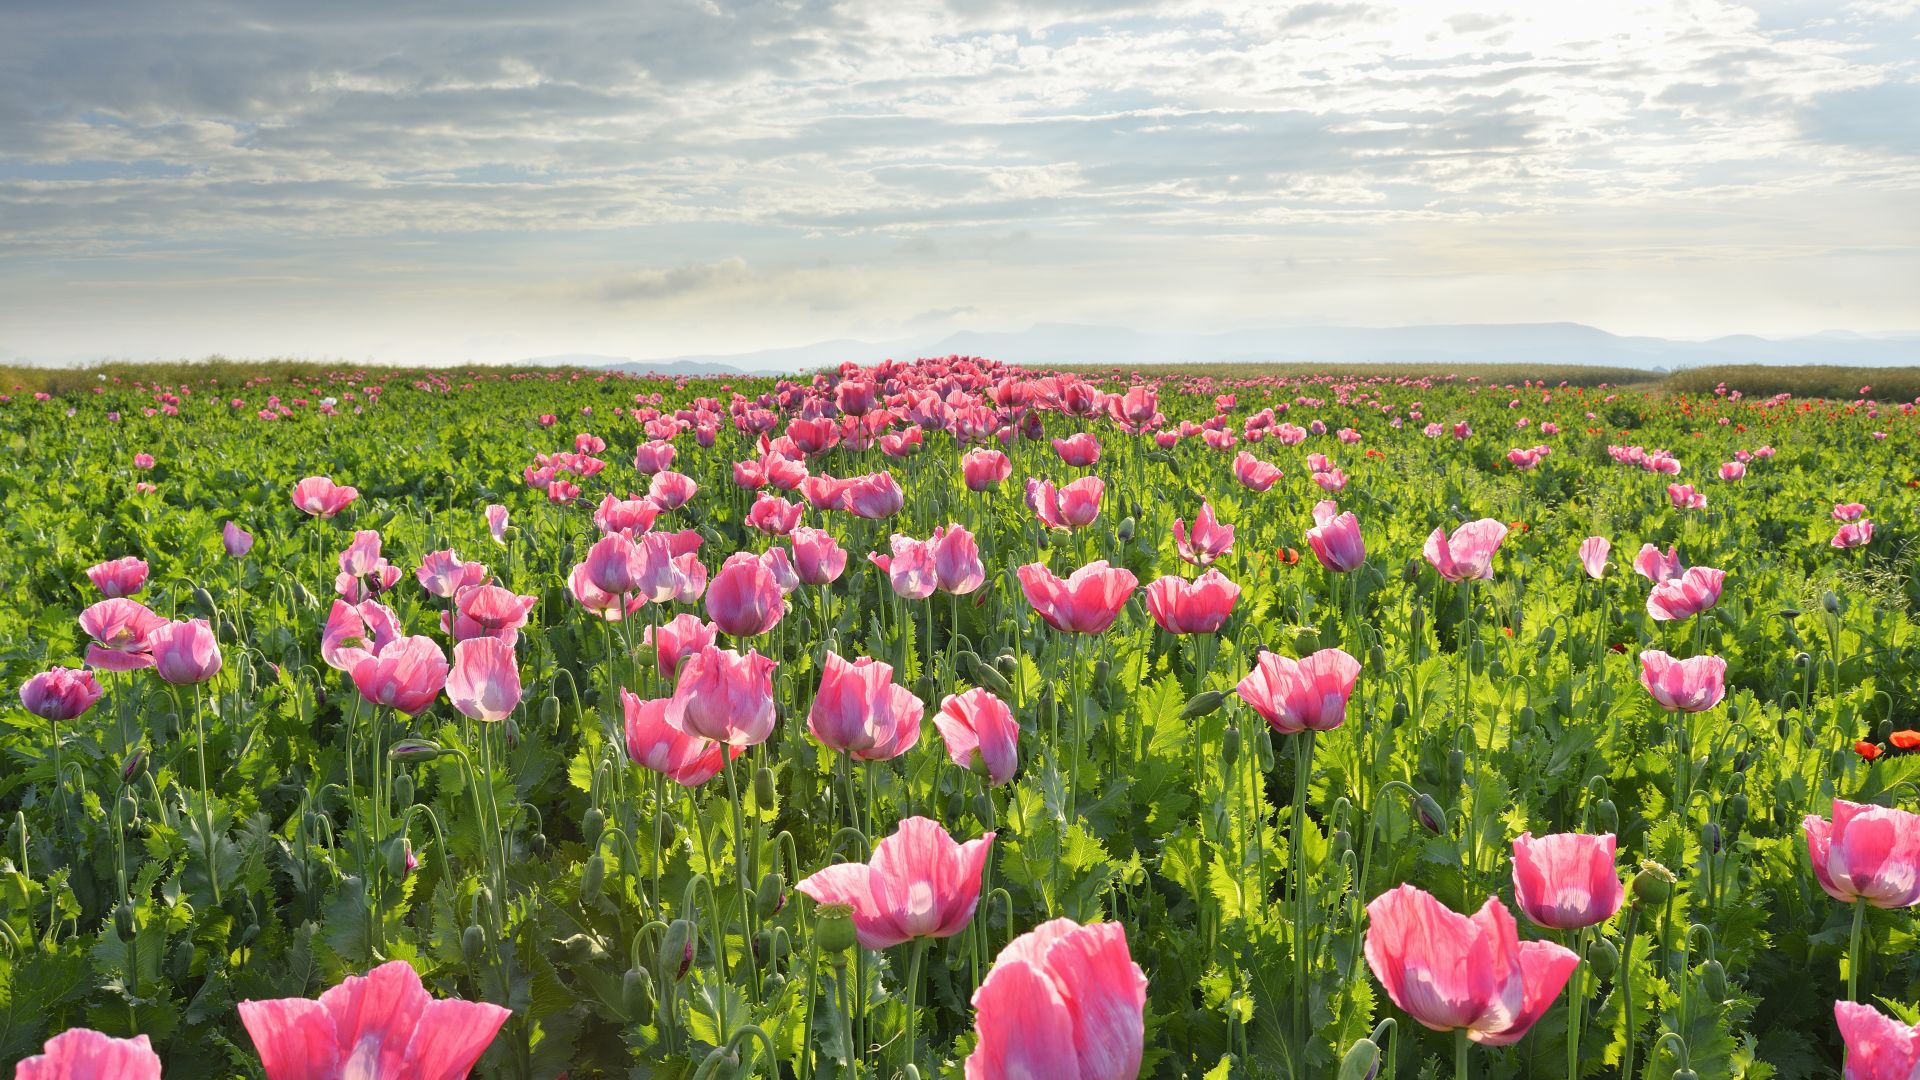 Meißner: Poppy fields in bloom on the Hohe Meißner in Germerode